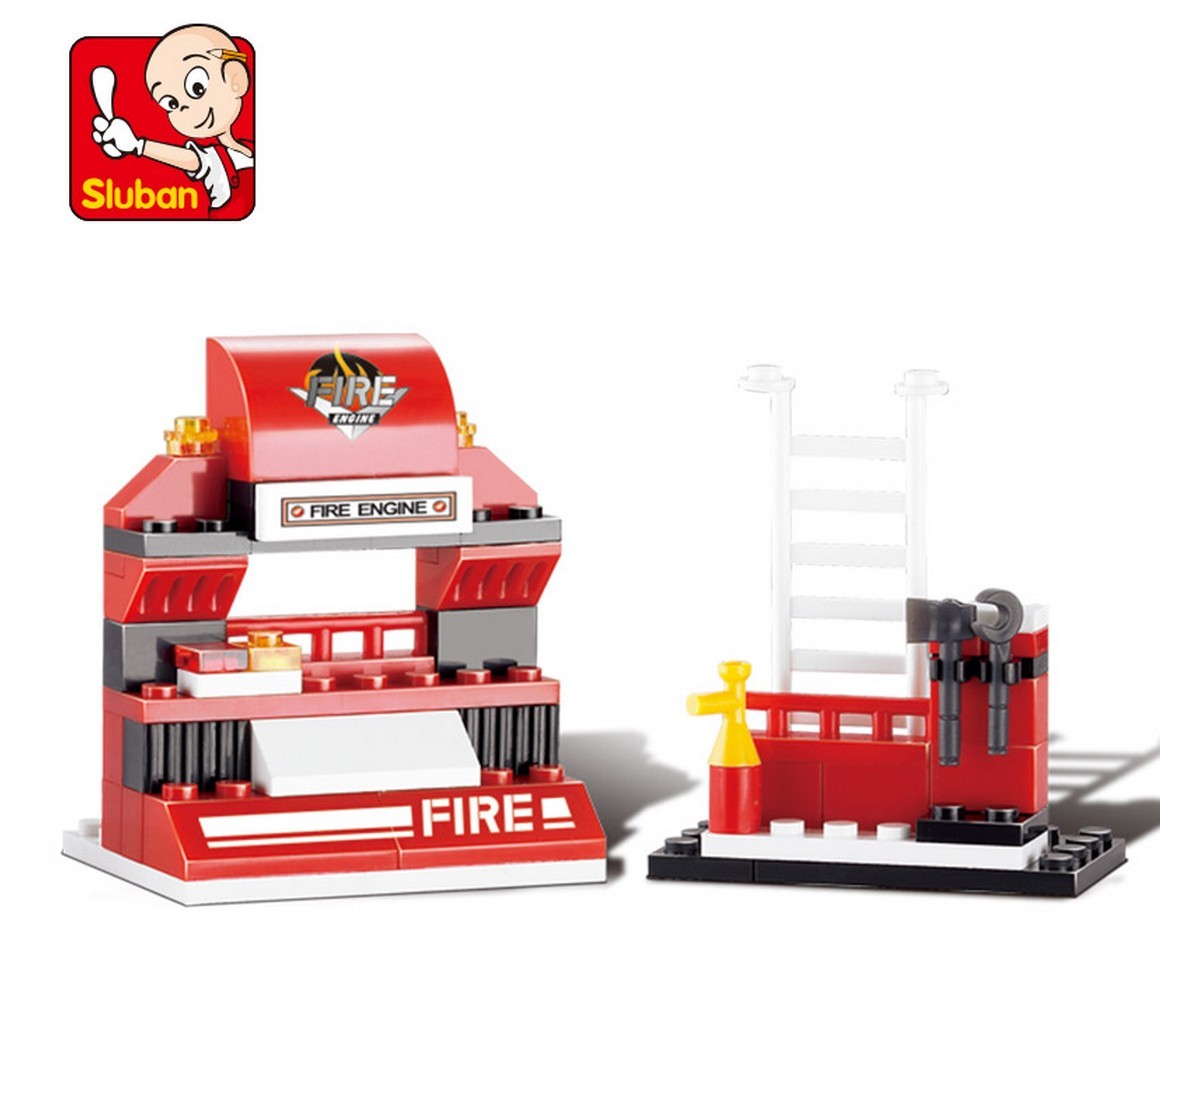 Sluban Mini Fire Truck Plastic Building Block set of 133 pieces Multicolor 6Y+